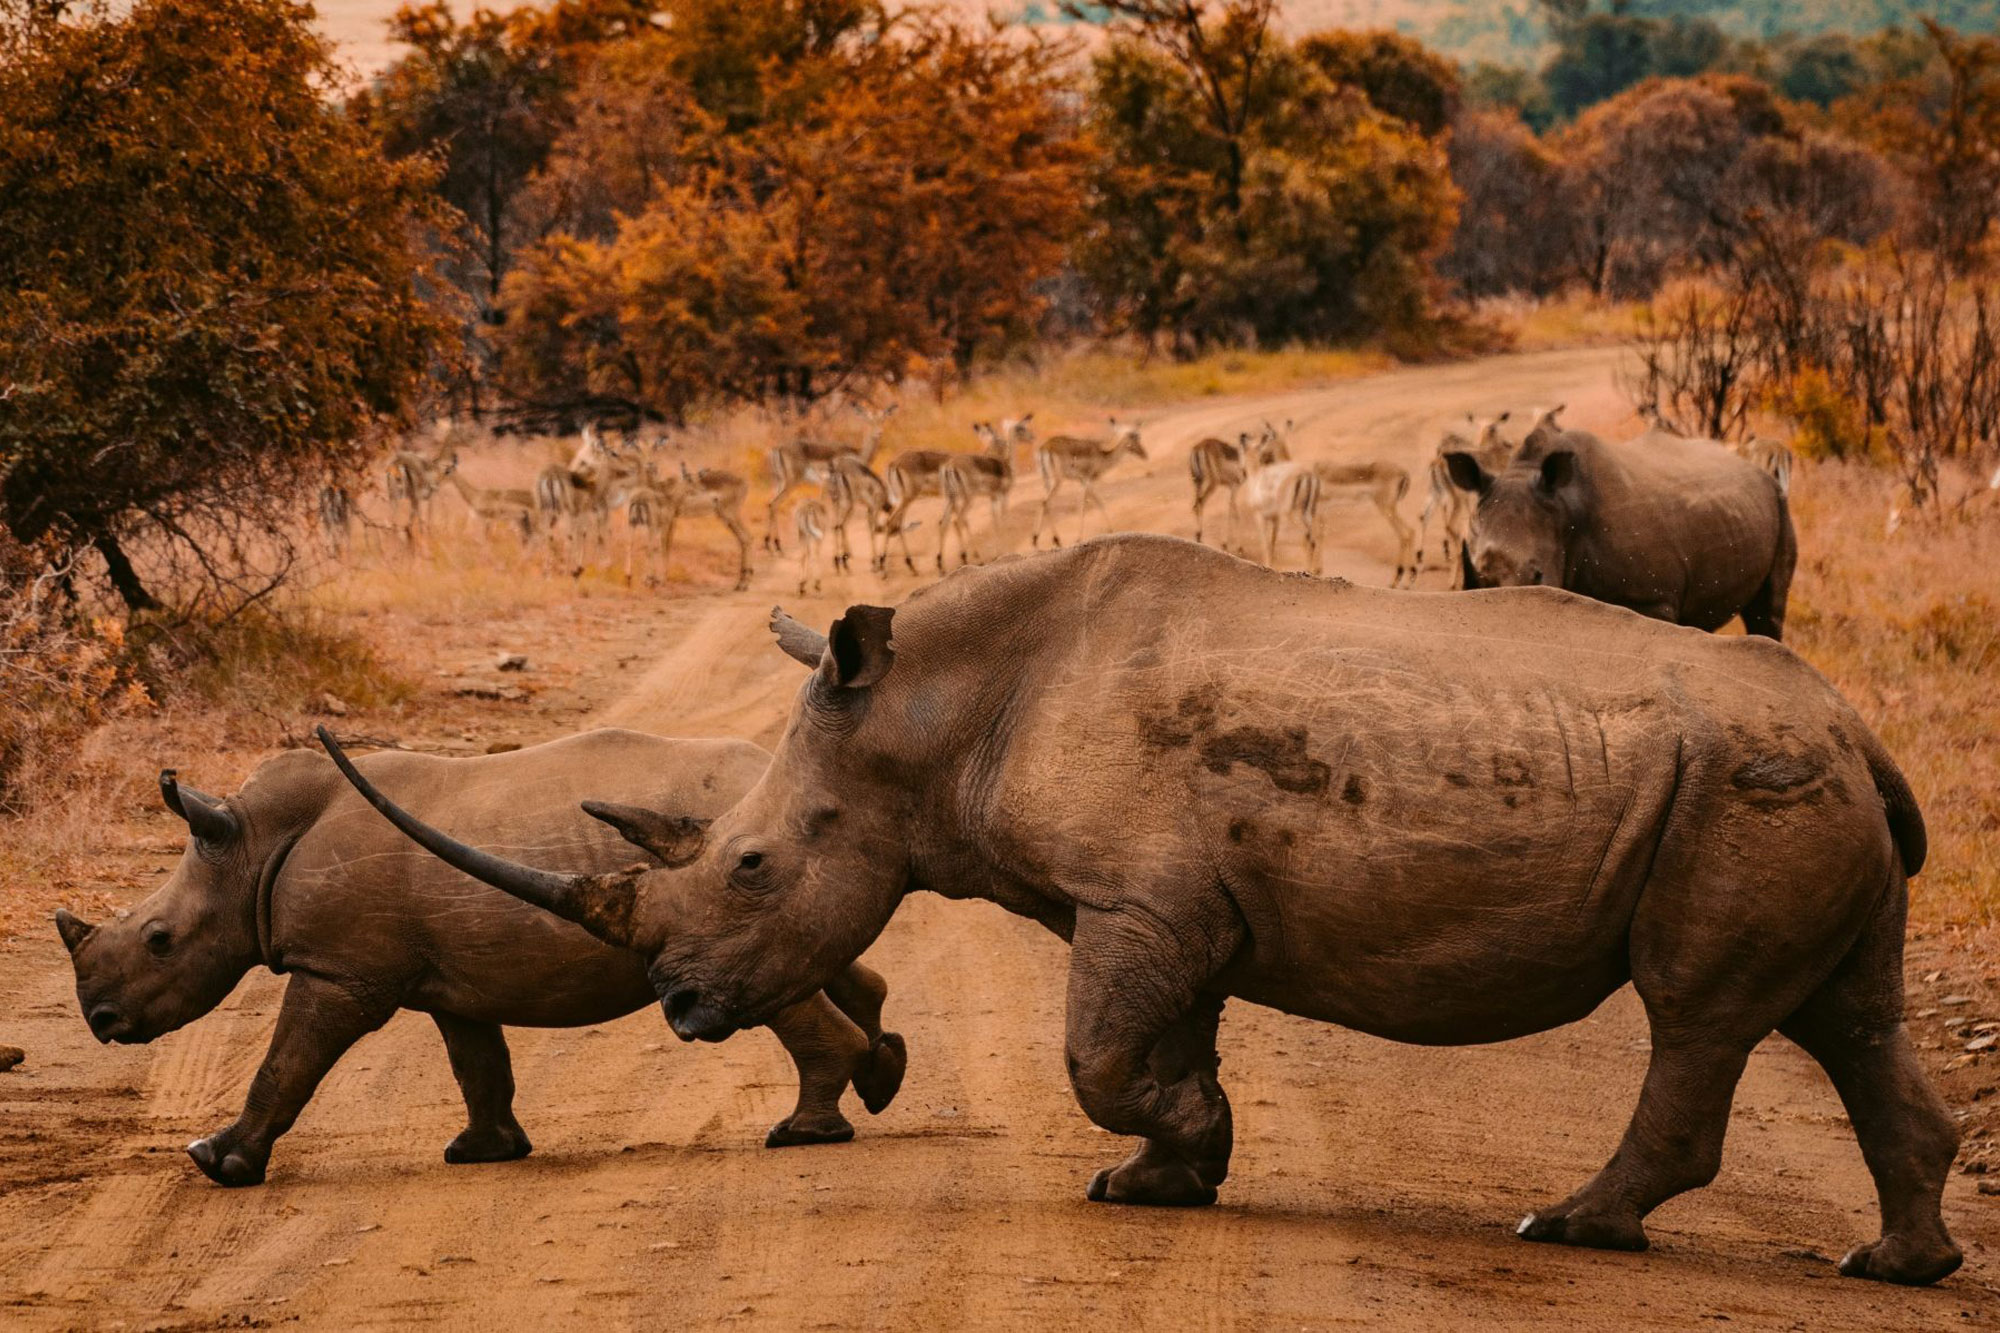 Two rhinos cross a dusty path